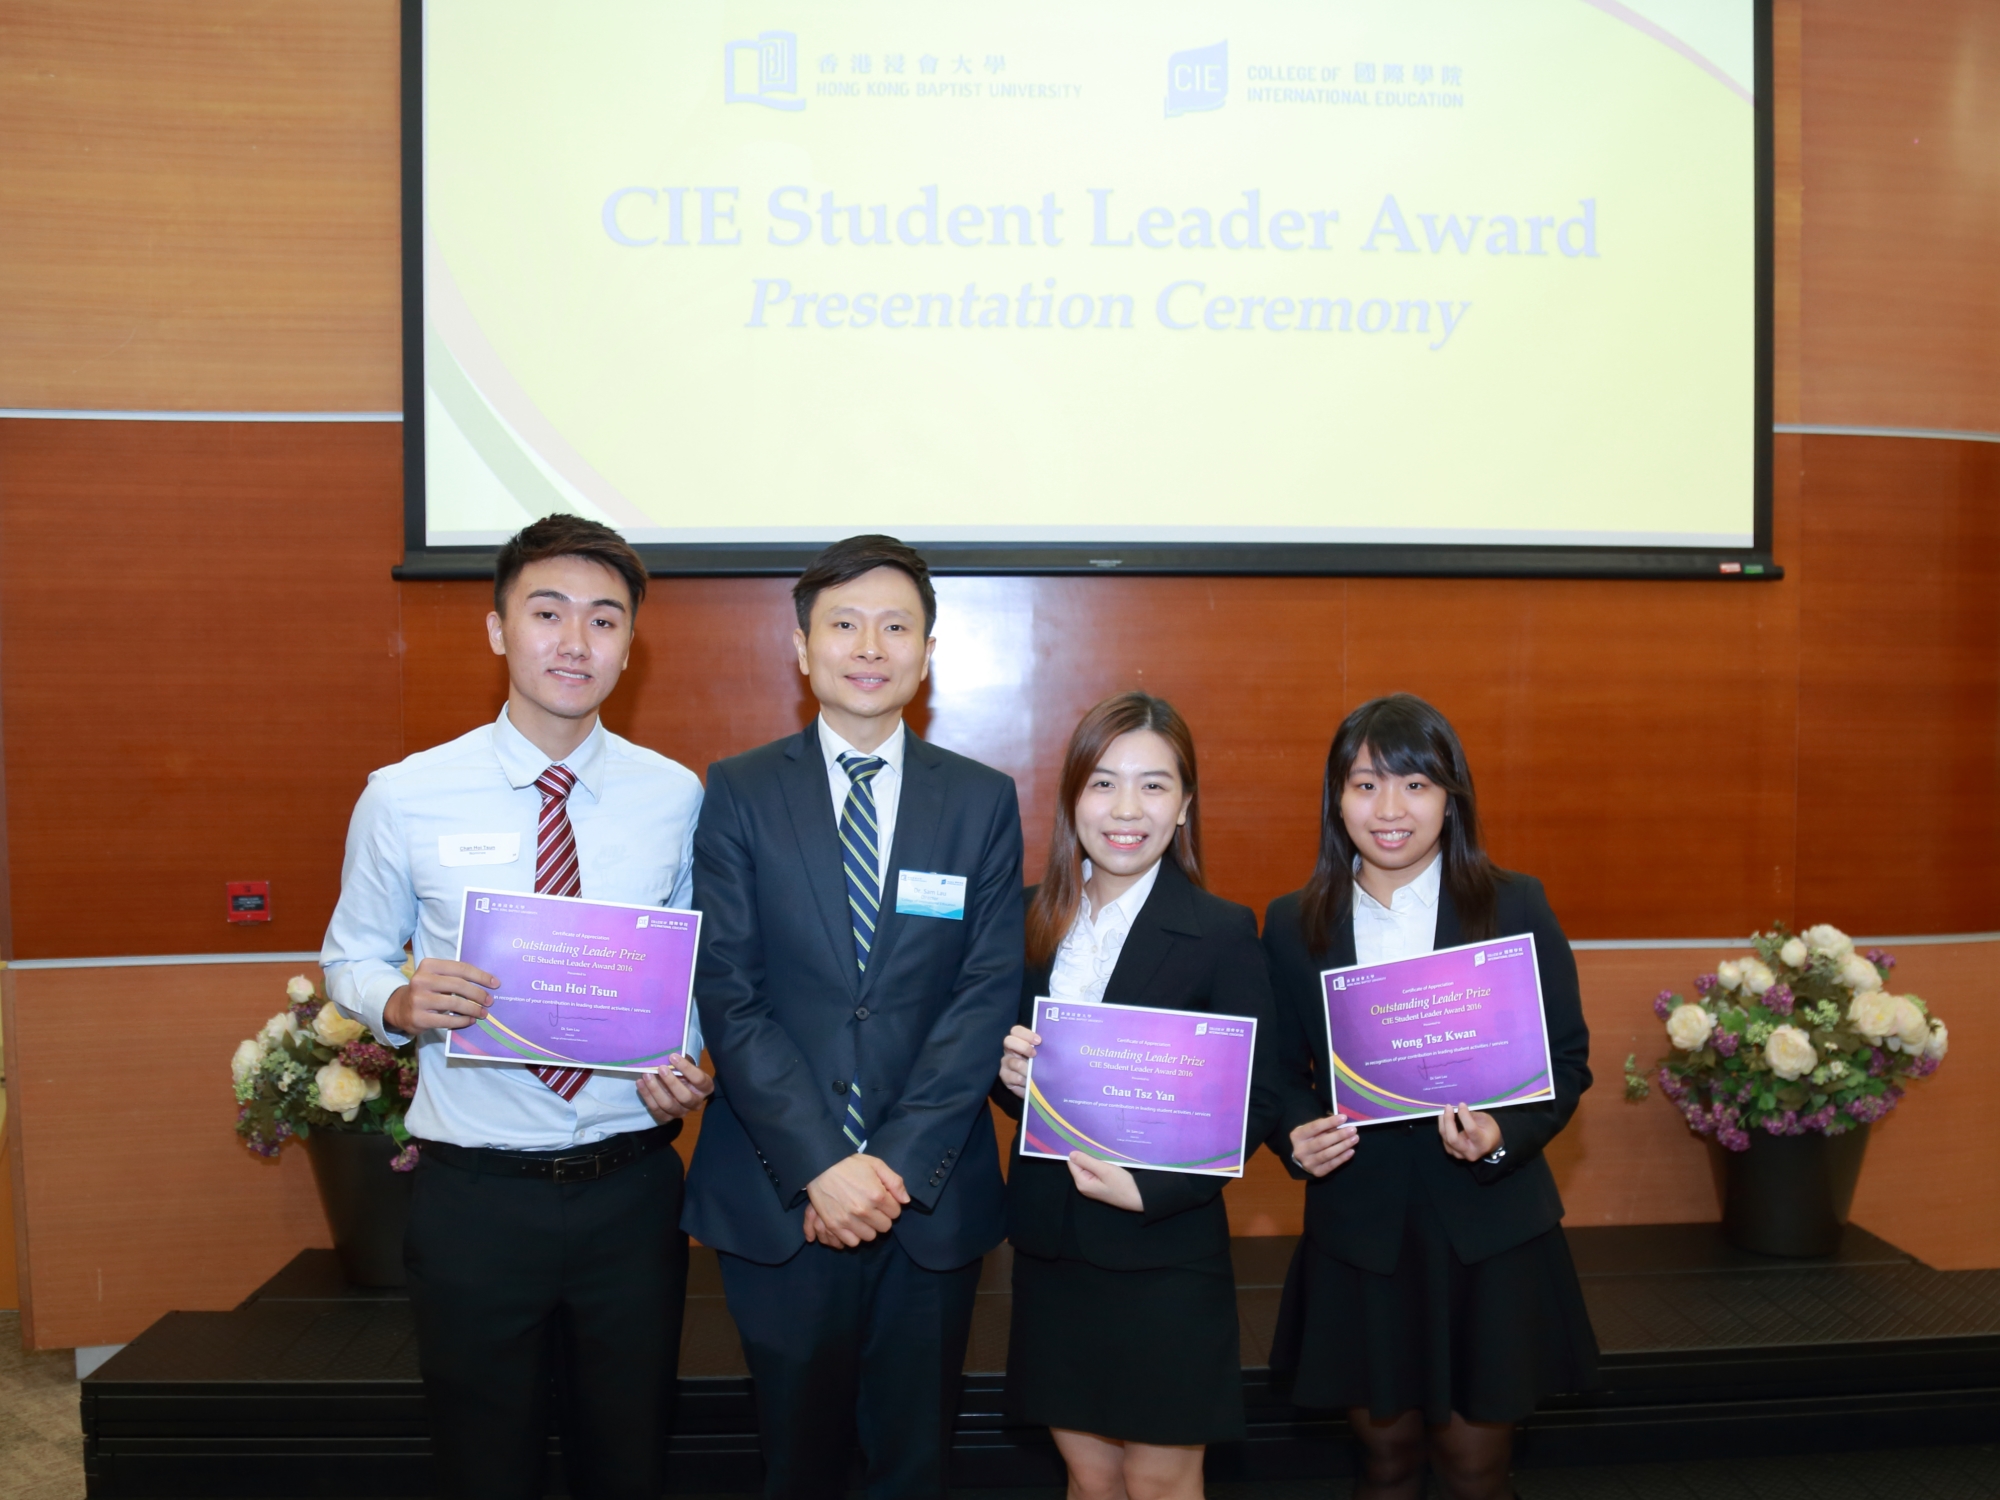 劉信信博士為獲頒「傑出學生領袖獎」的同學感到鼓舞。